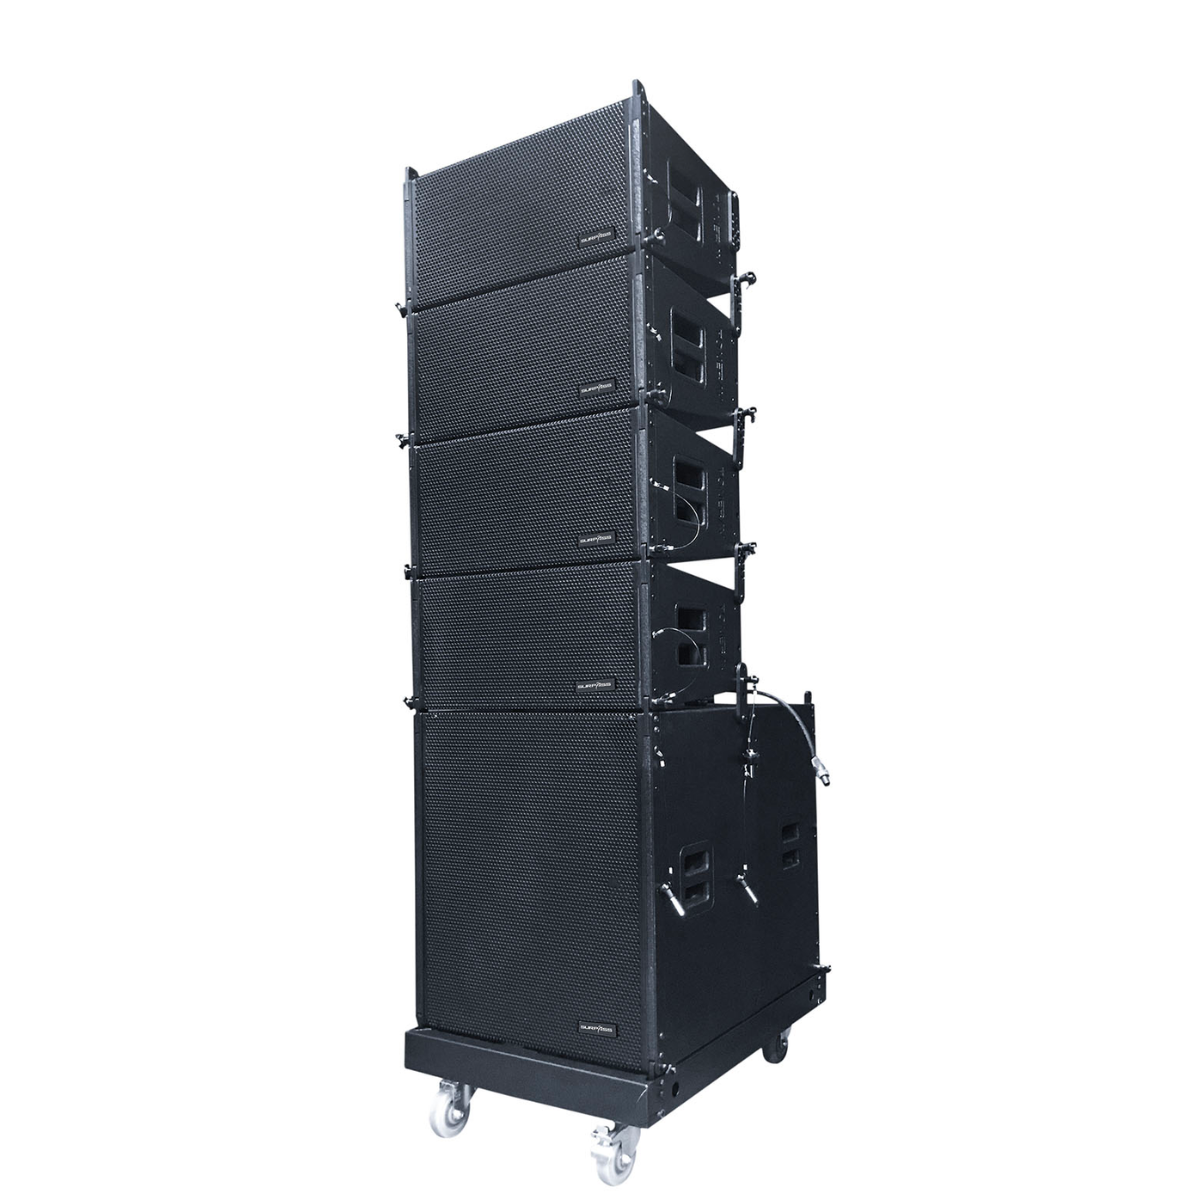 SP-DUS18 10-inch, line array system, full-range professional speaker, 18-inch subwoofer